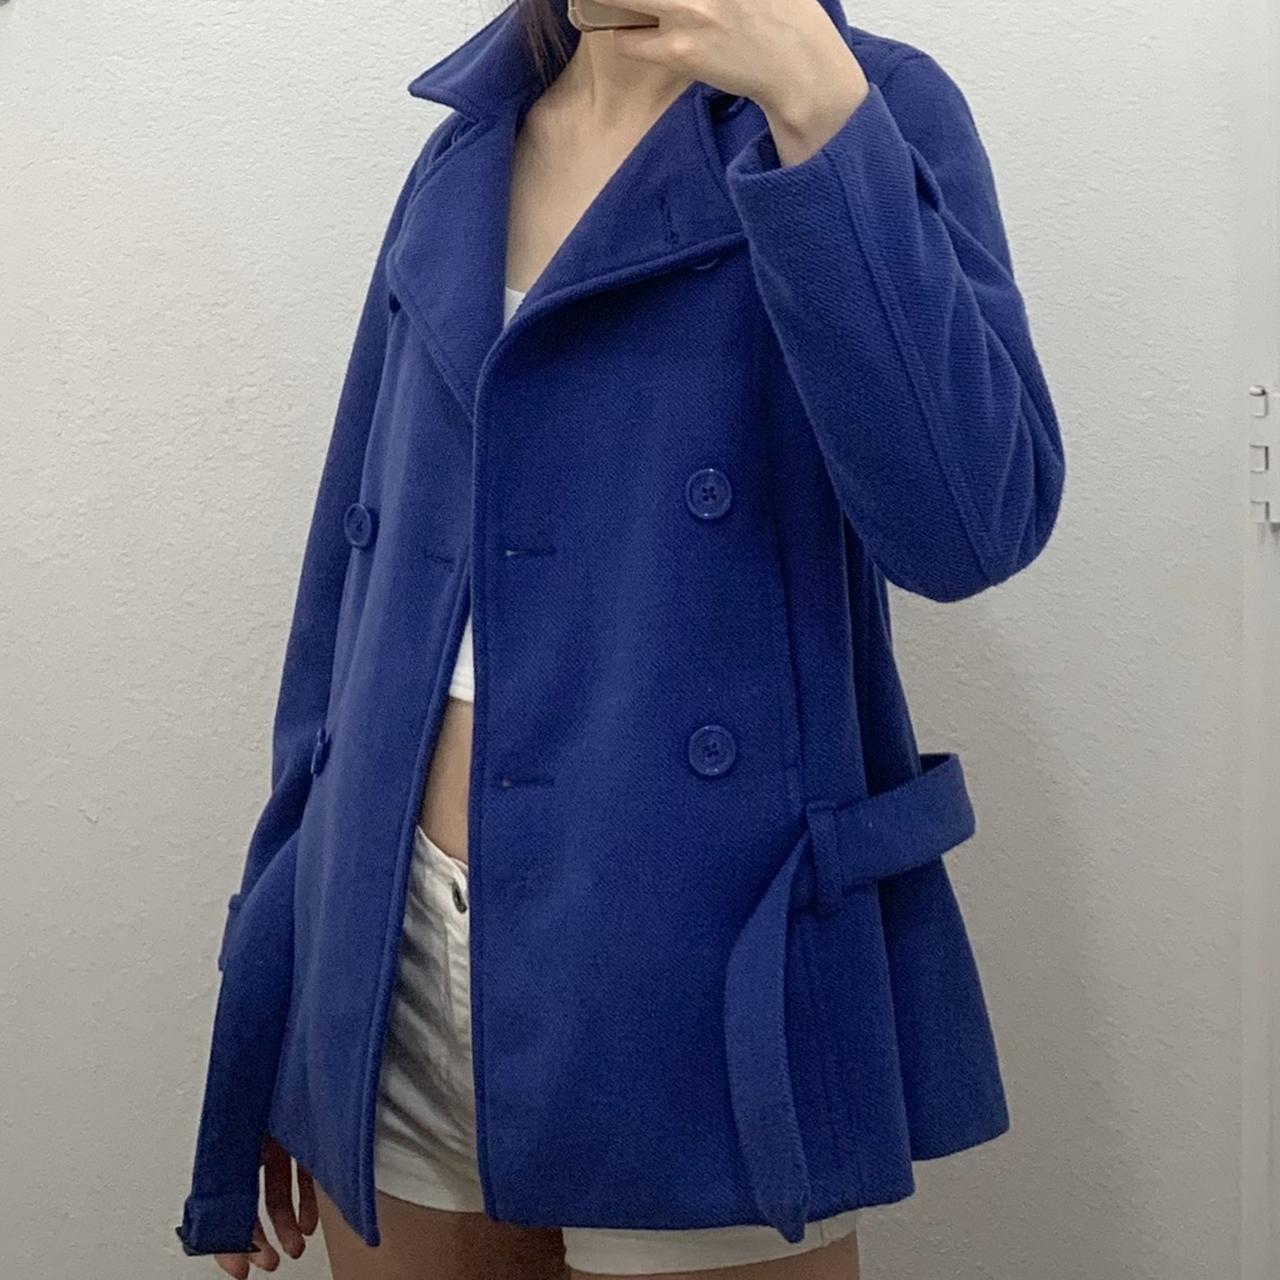 Zara Women's Purple and Blue Coat | Depop